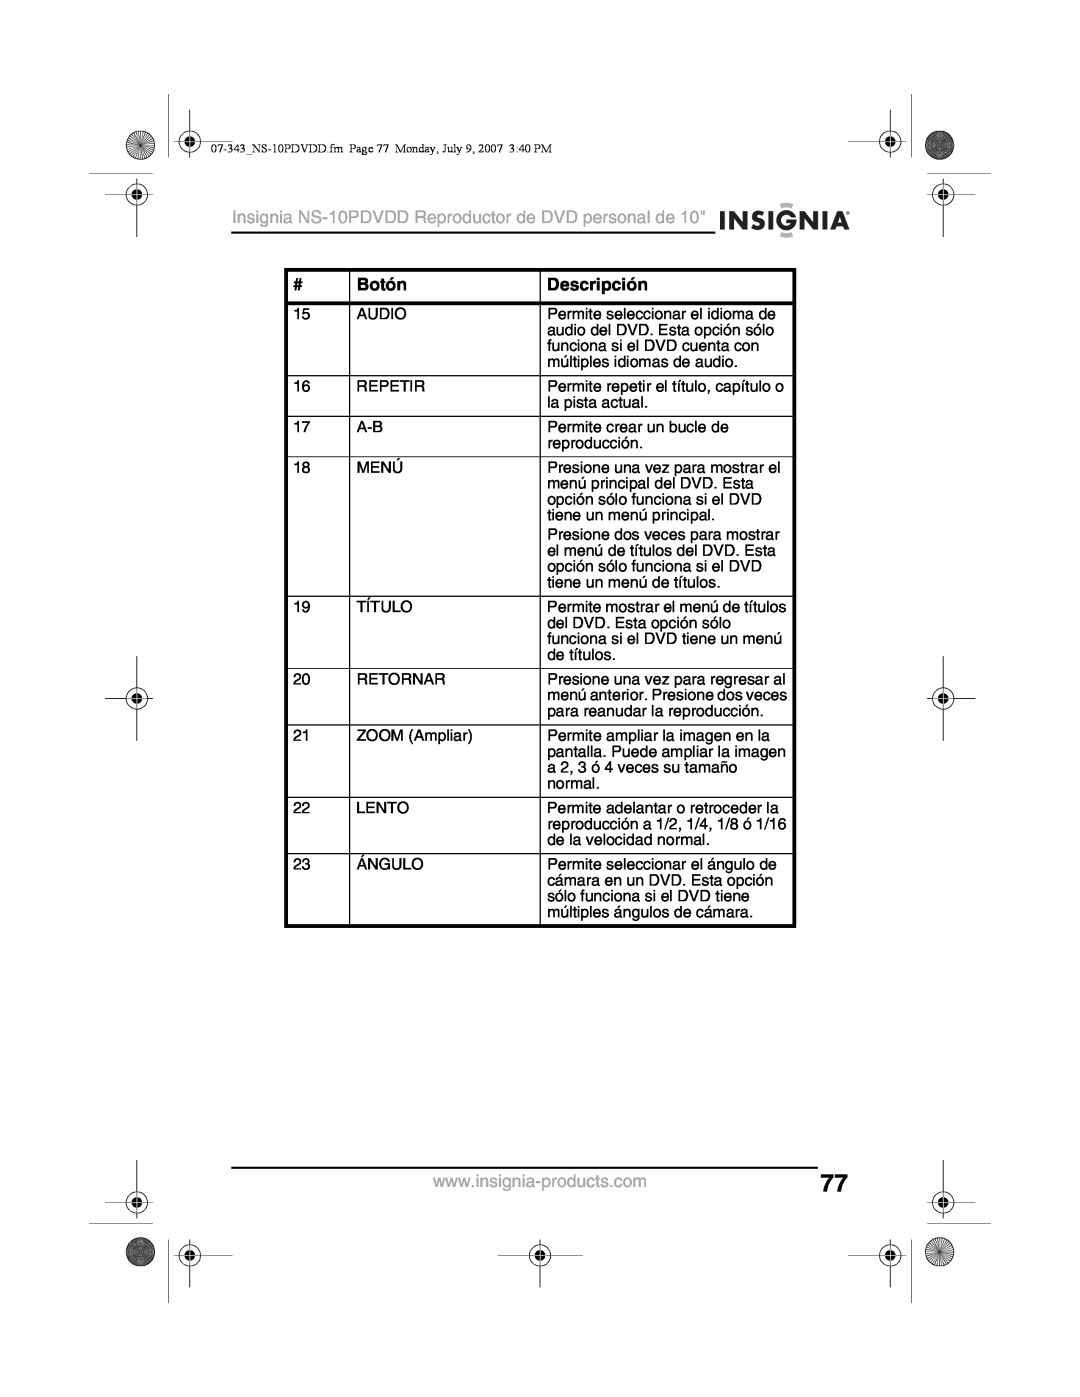 Insignia Insignia NS-10PDVDD Reproductor de DVD personal de, Botón, Descripción, Permite mostrar el menú de títulos 